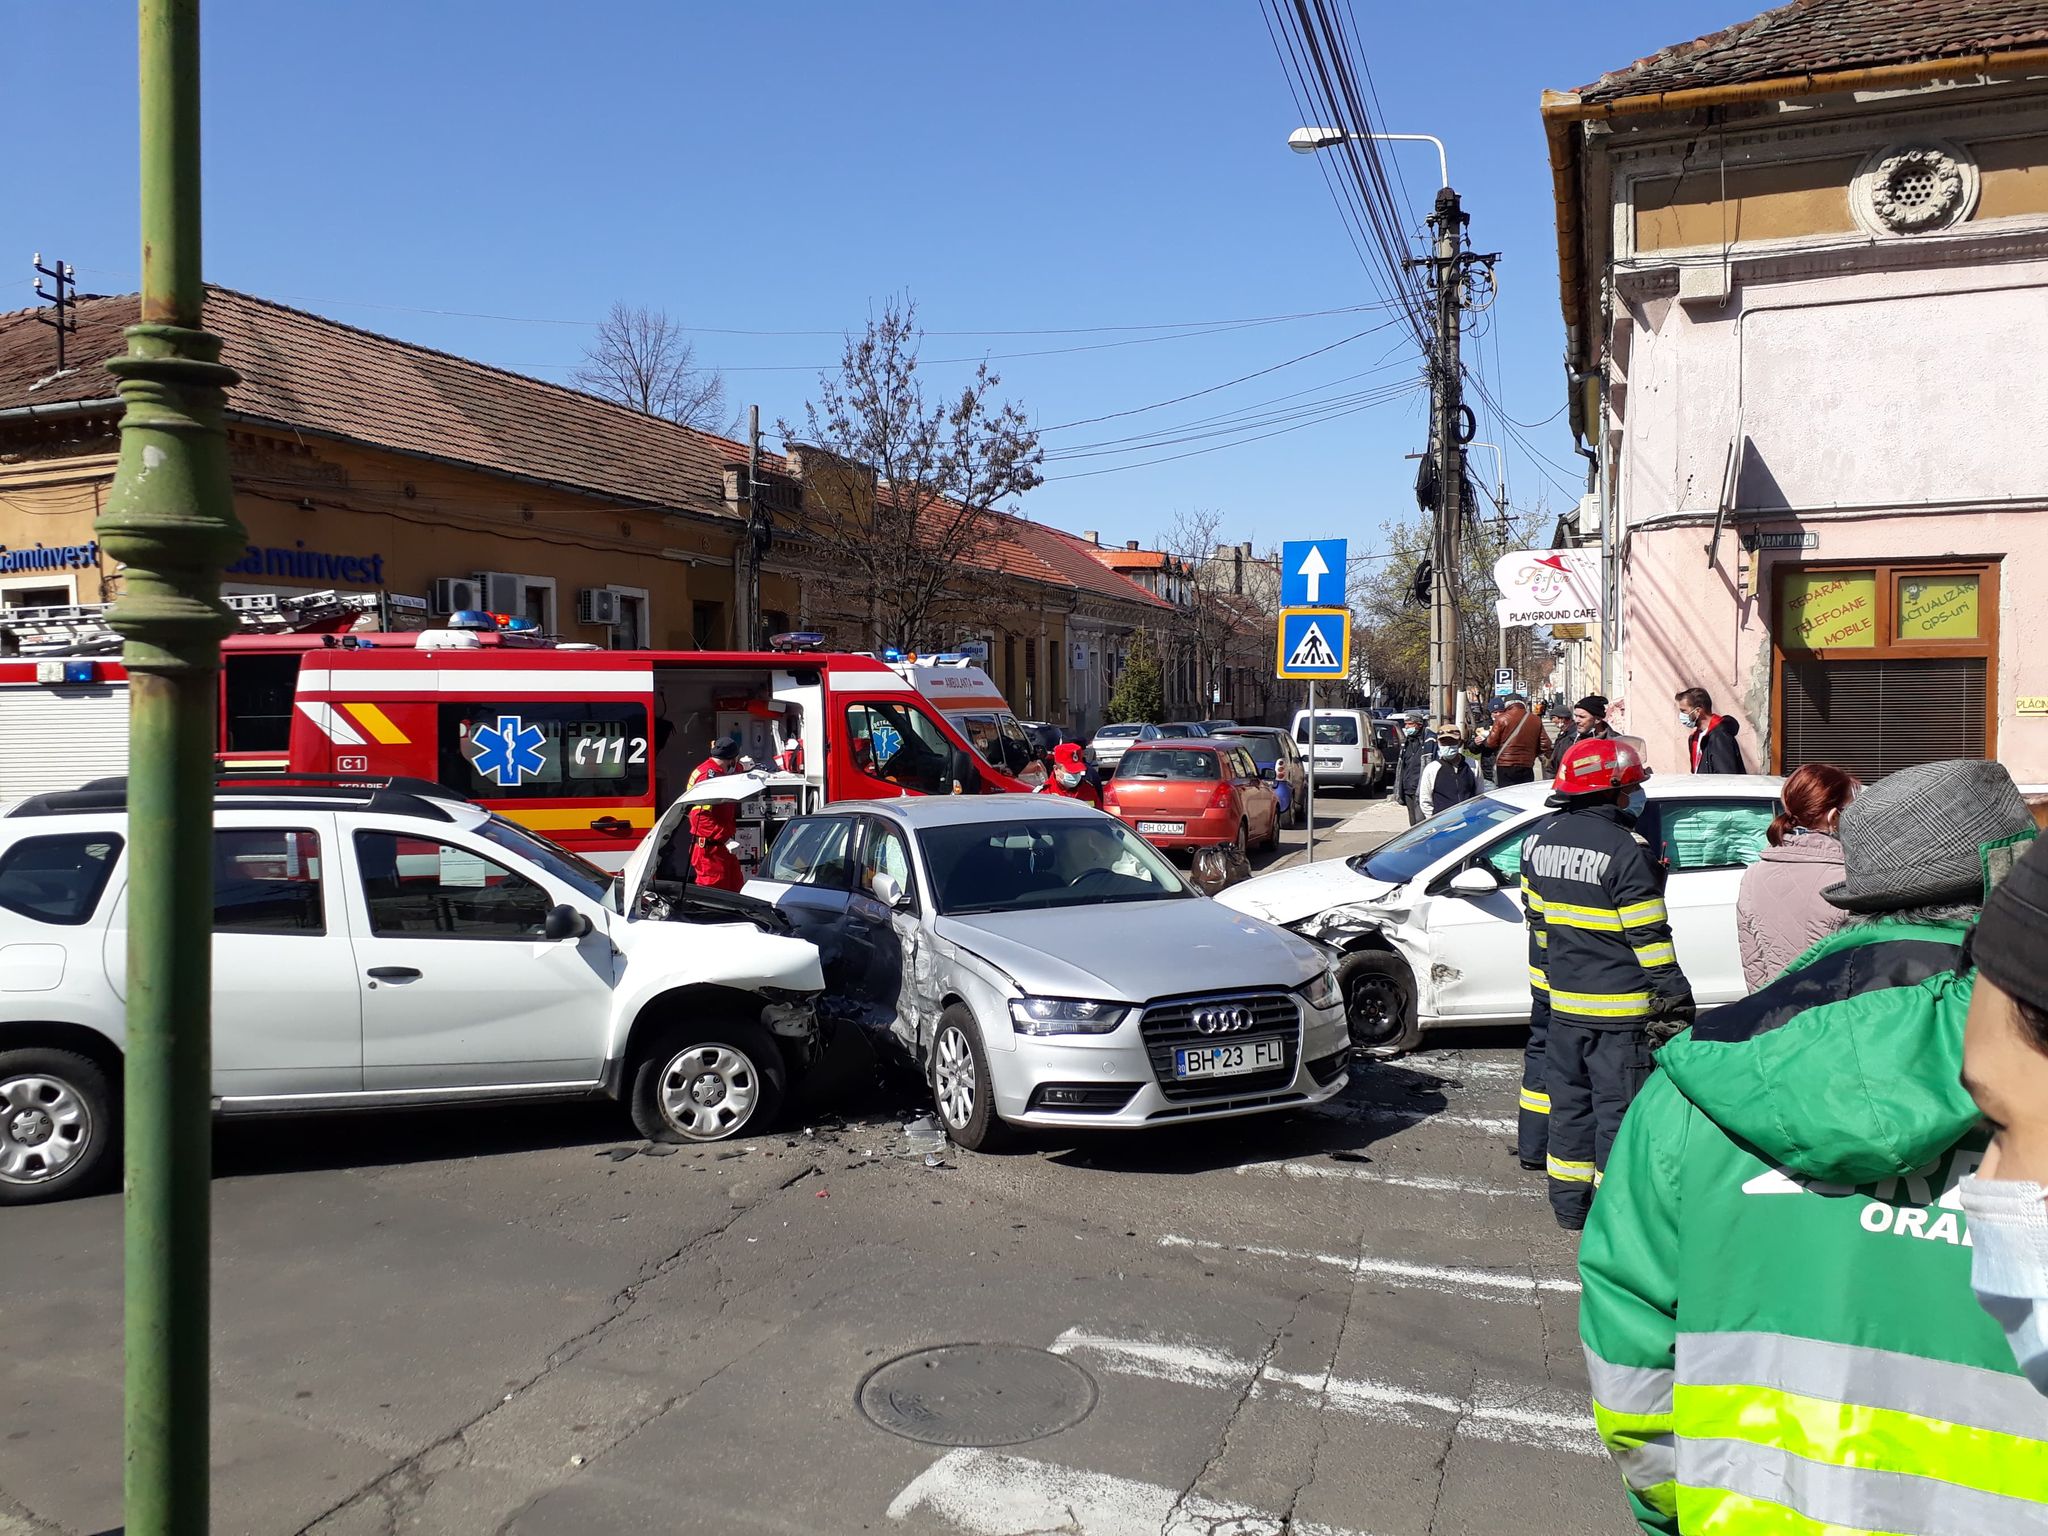 FOTO: Accident strada Avram Iancu 09.04.2021